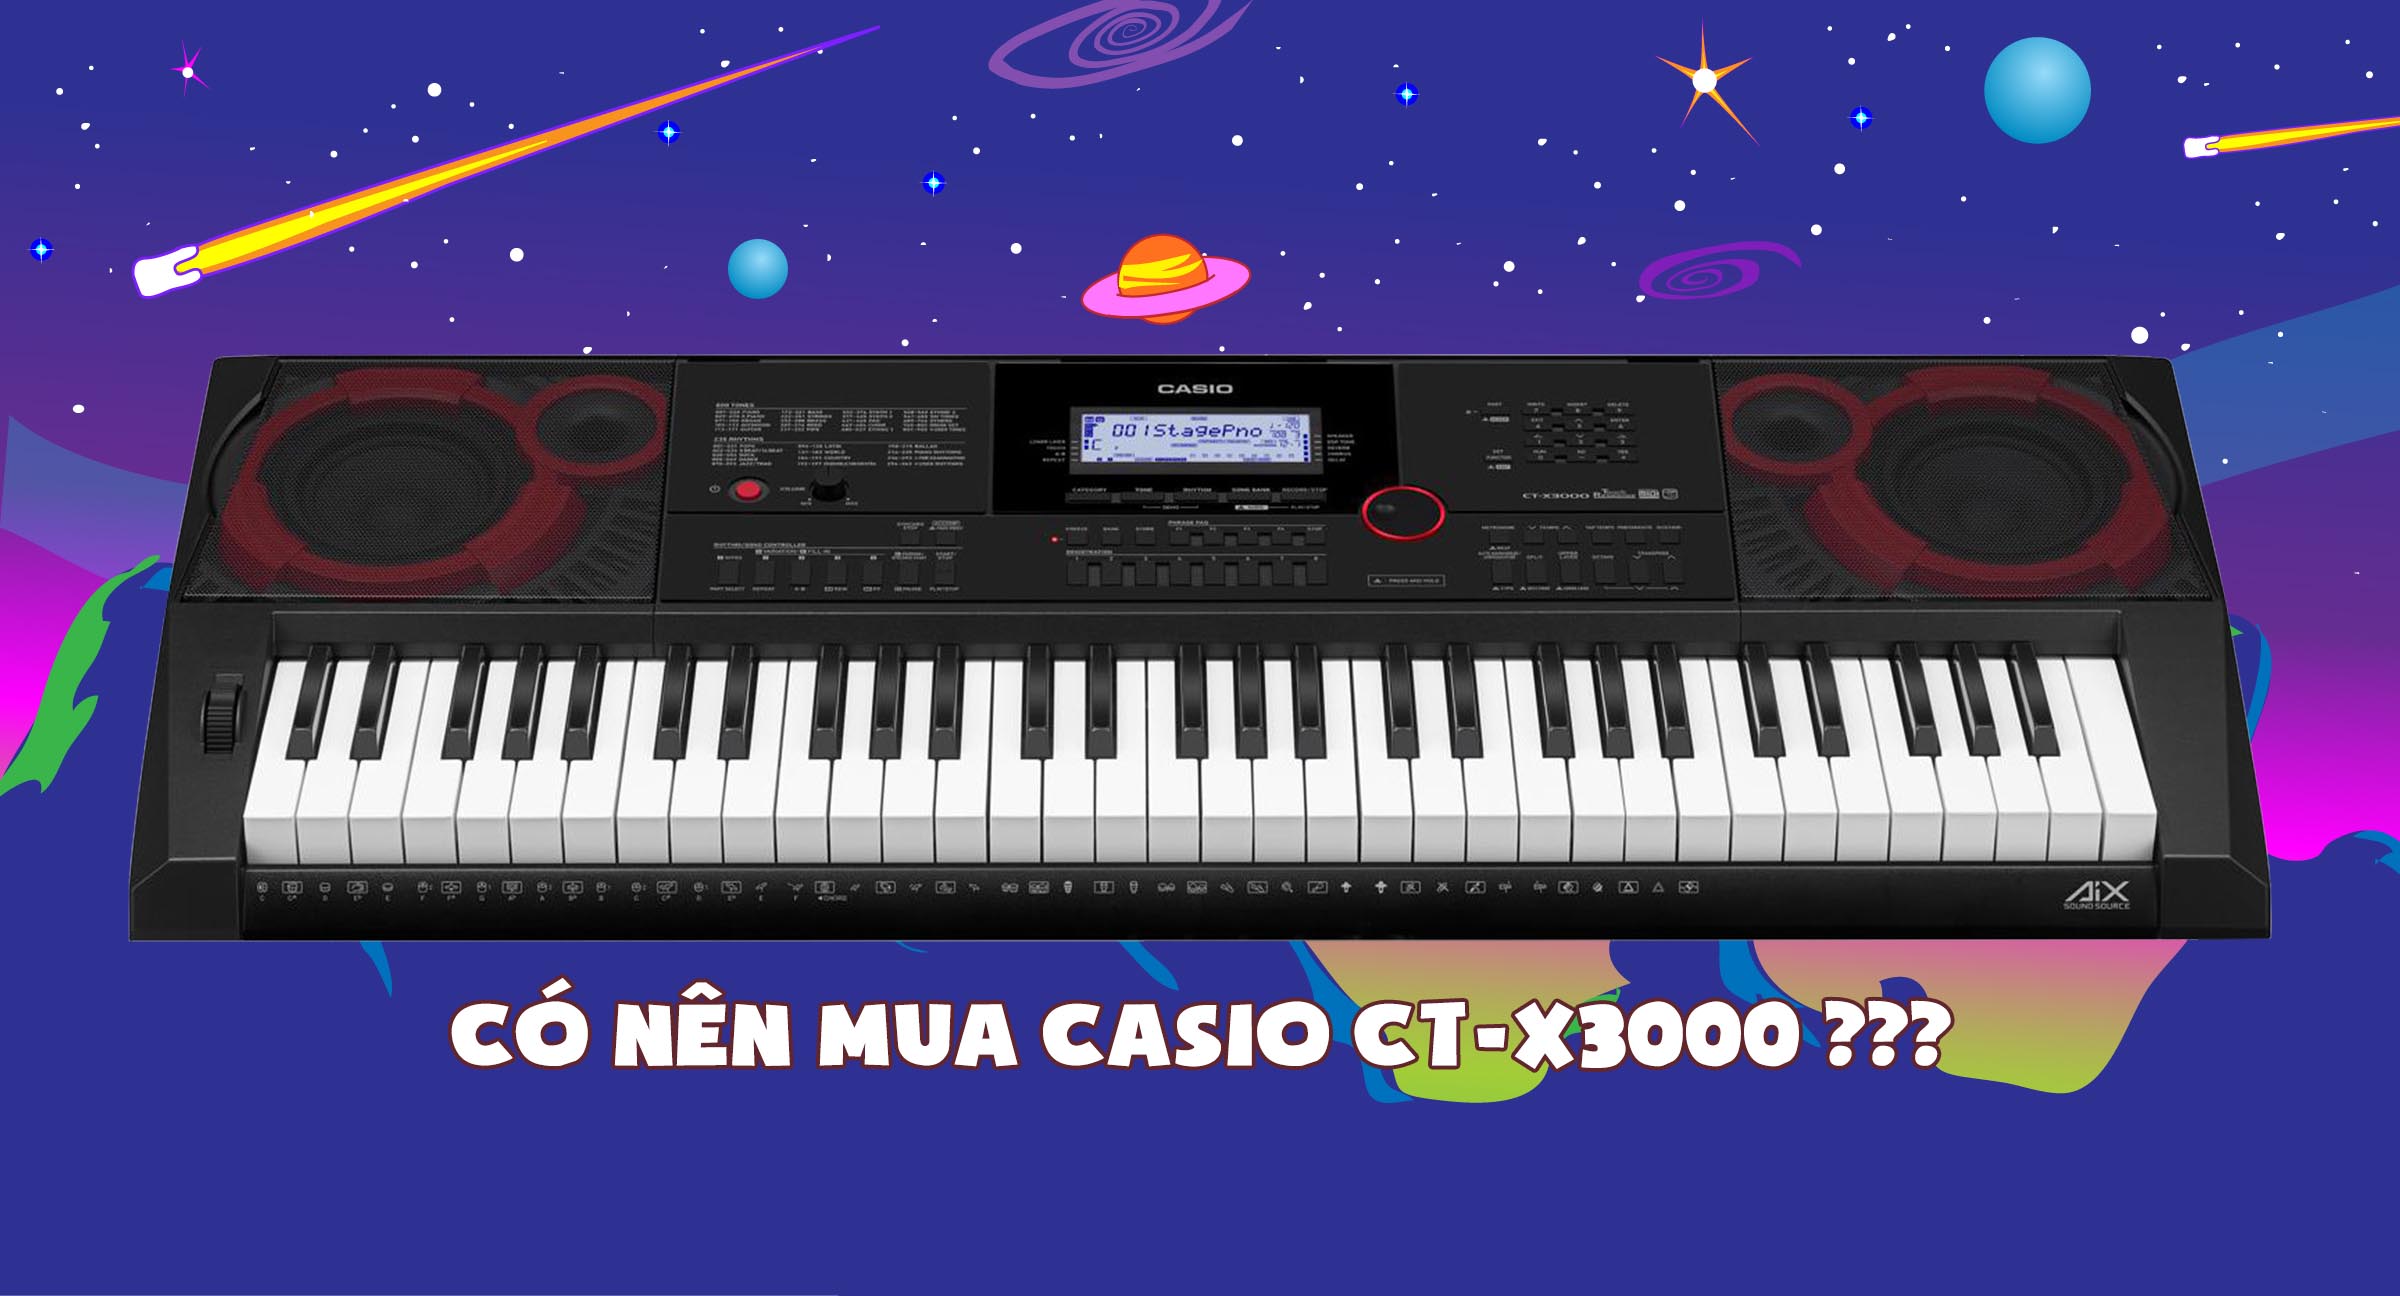 Review đàn organ Casio CT-X3000. Có nên mua không?